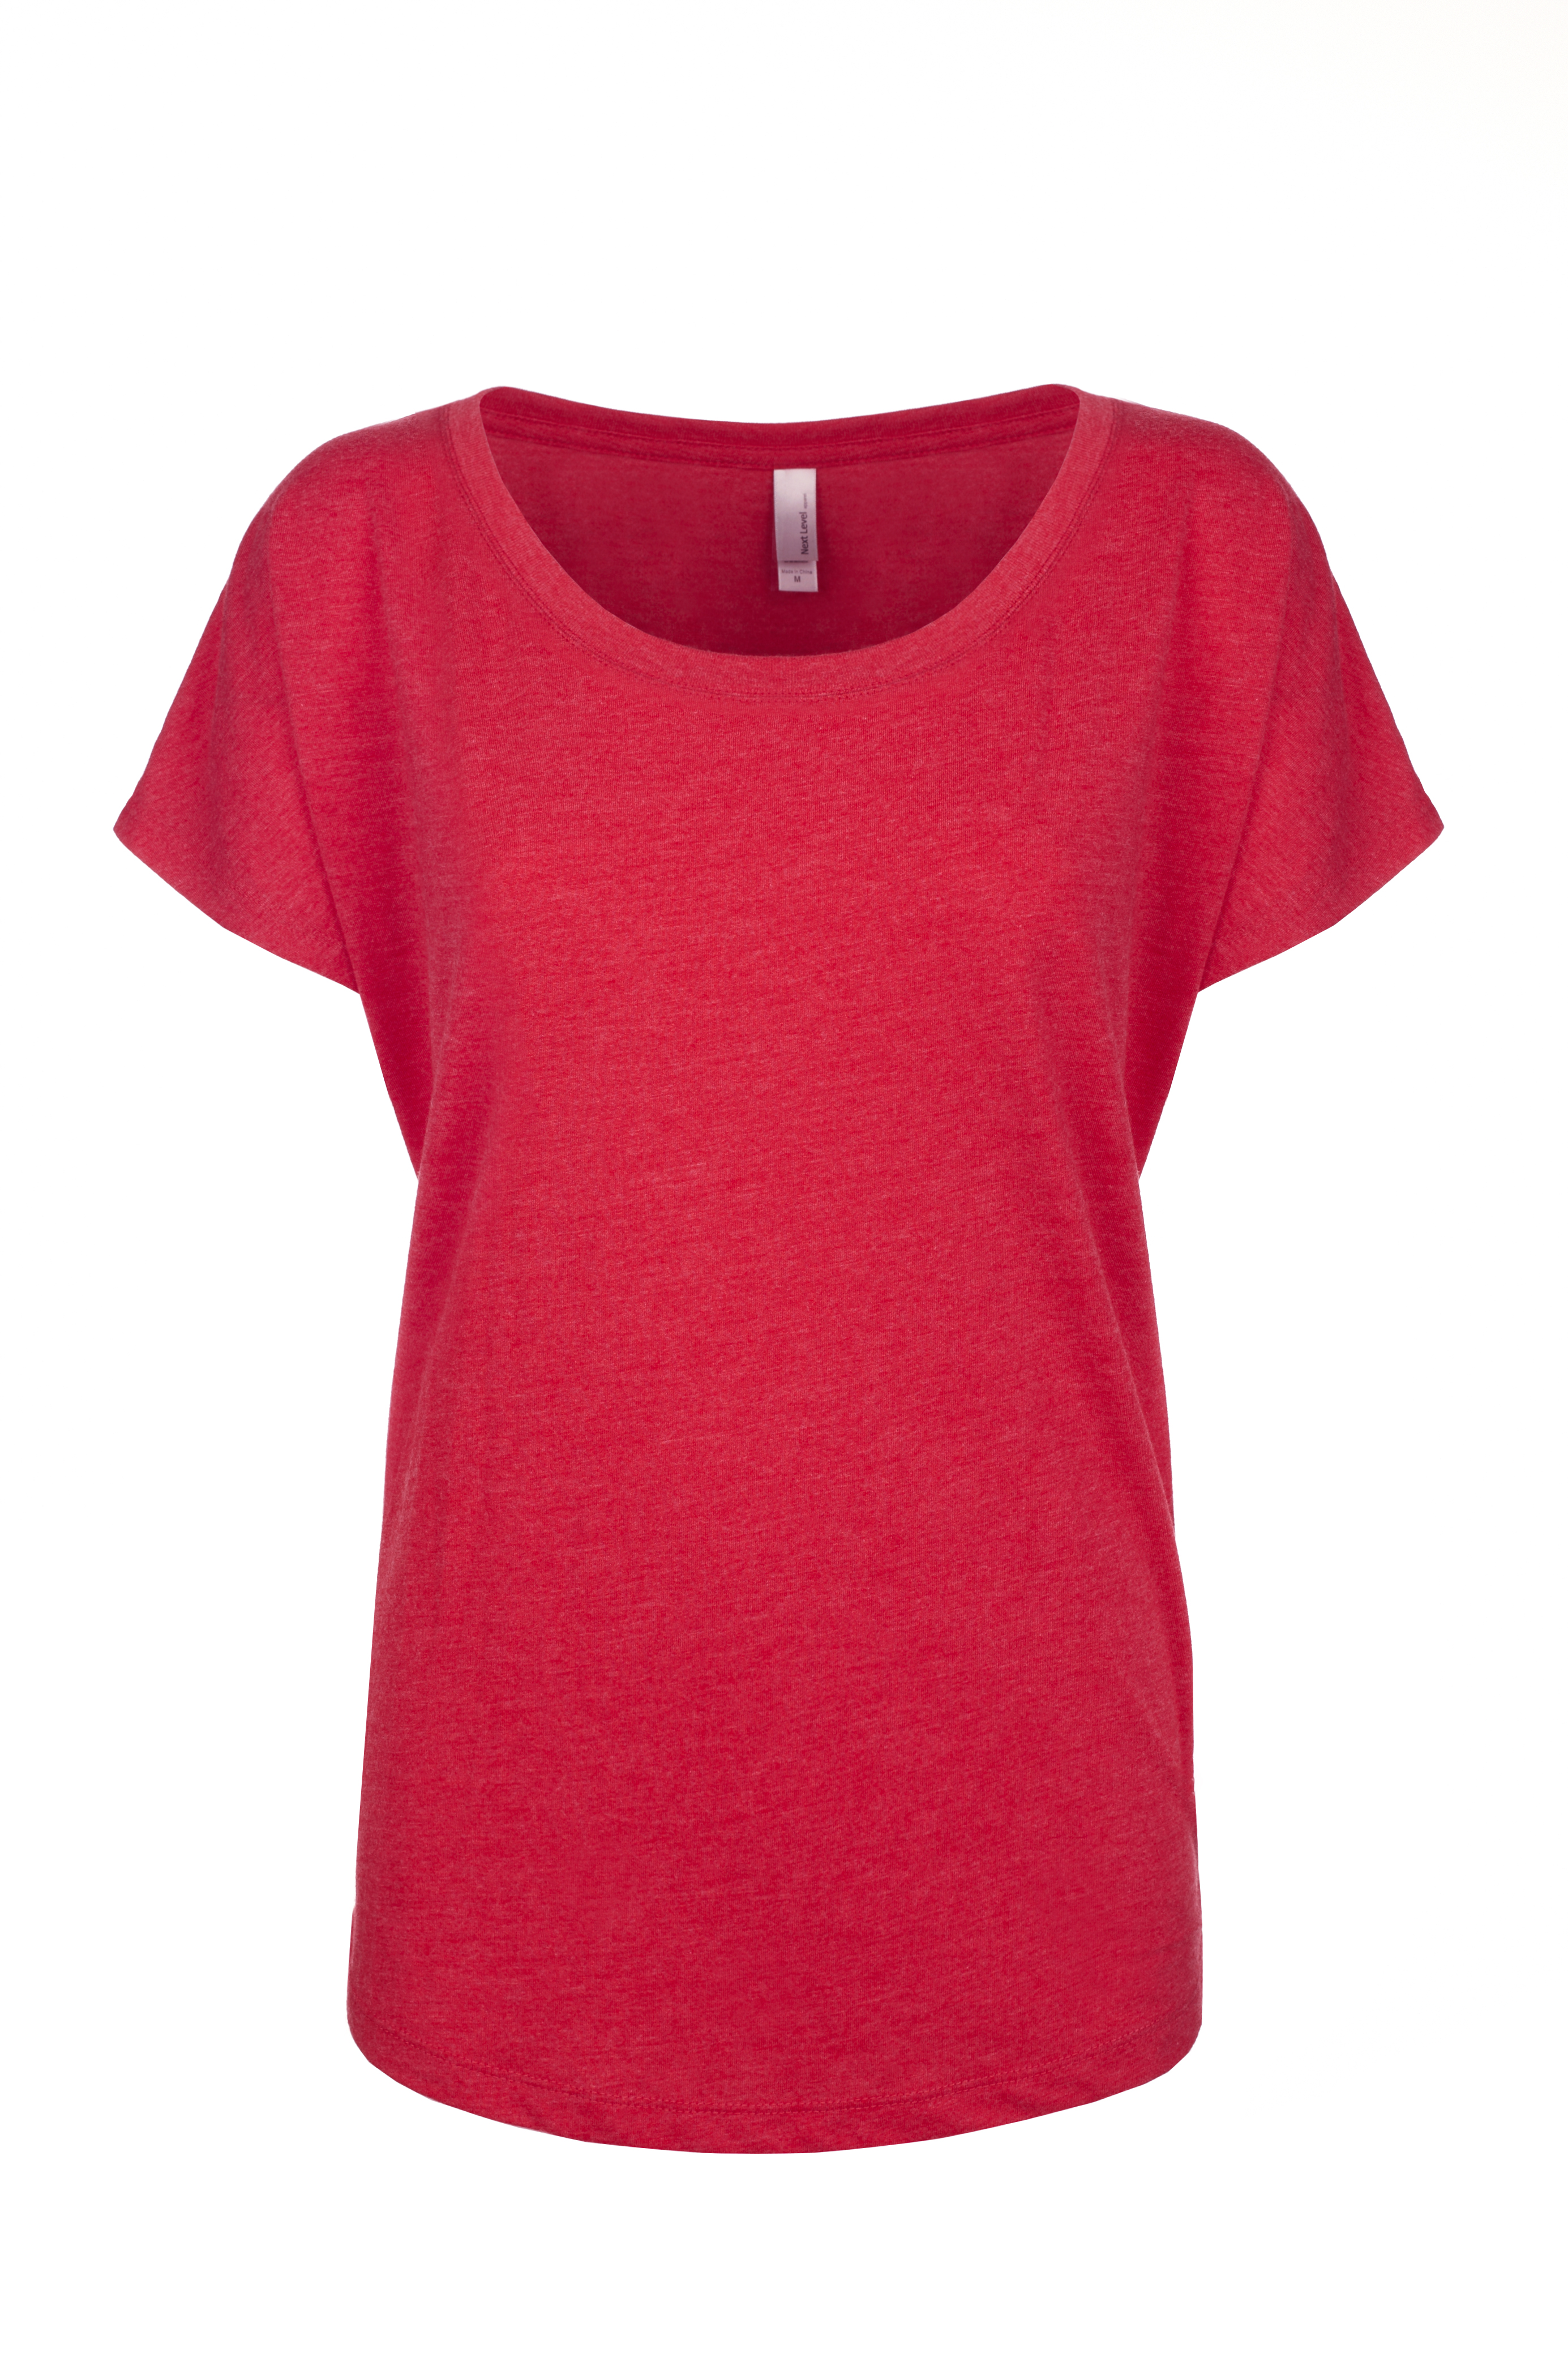 Next Level Apparel® 6760 Women's Tri-Blend Dolman T-Shirt